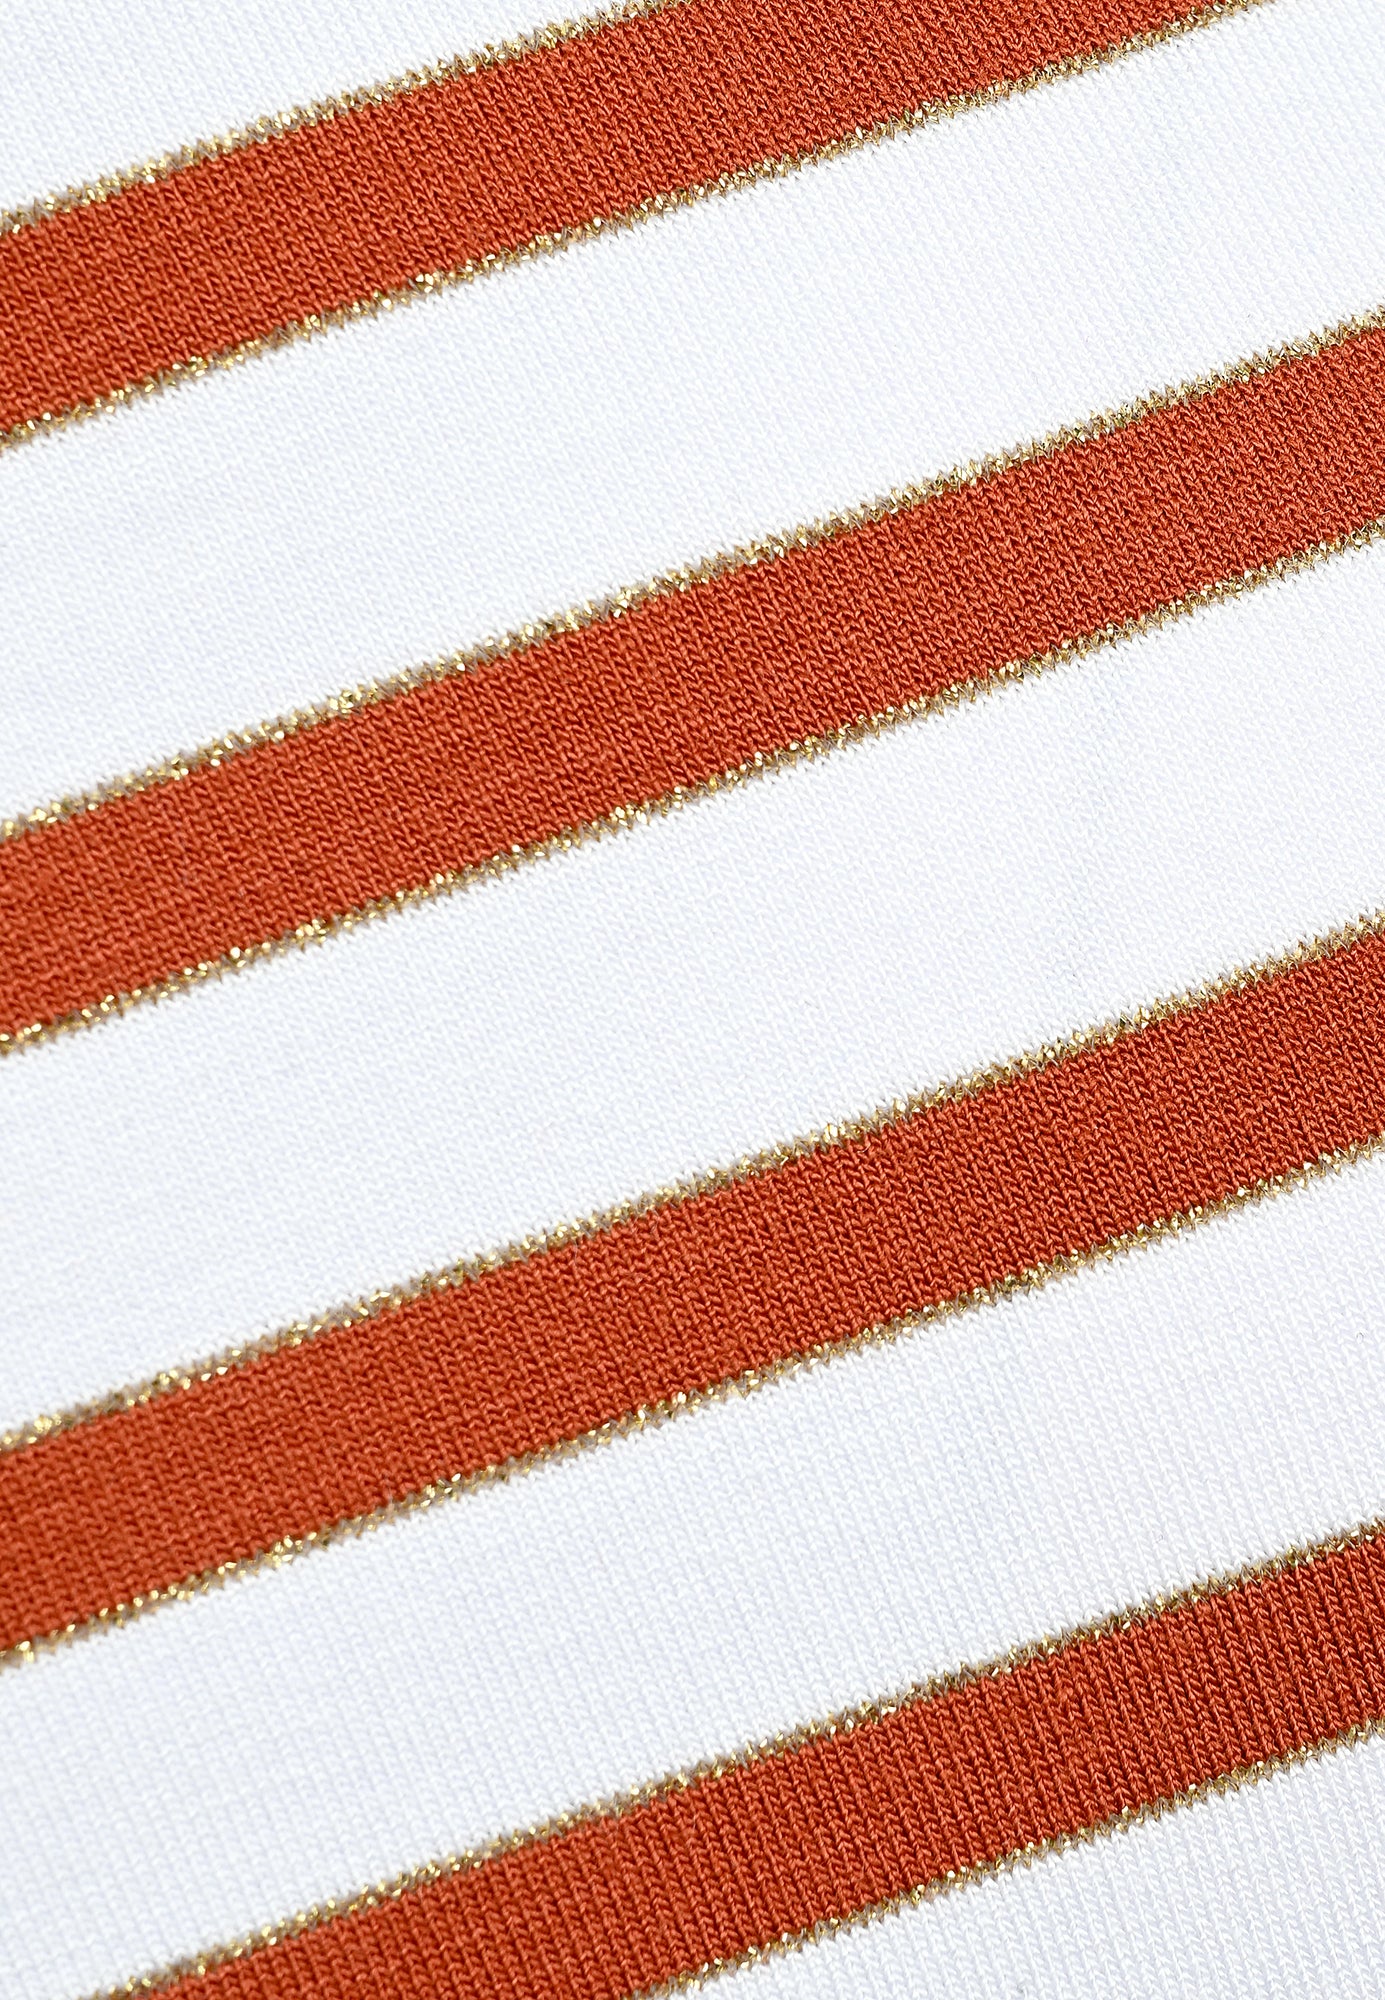 24333 Shirt V Stripes - 01/white-terra